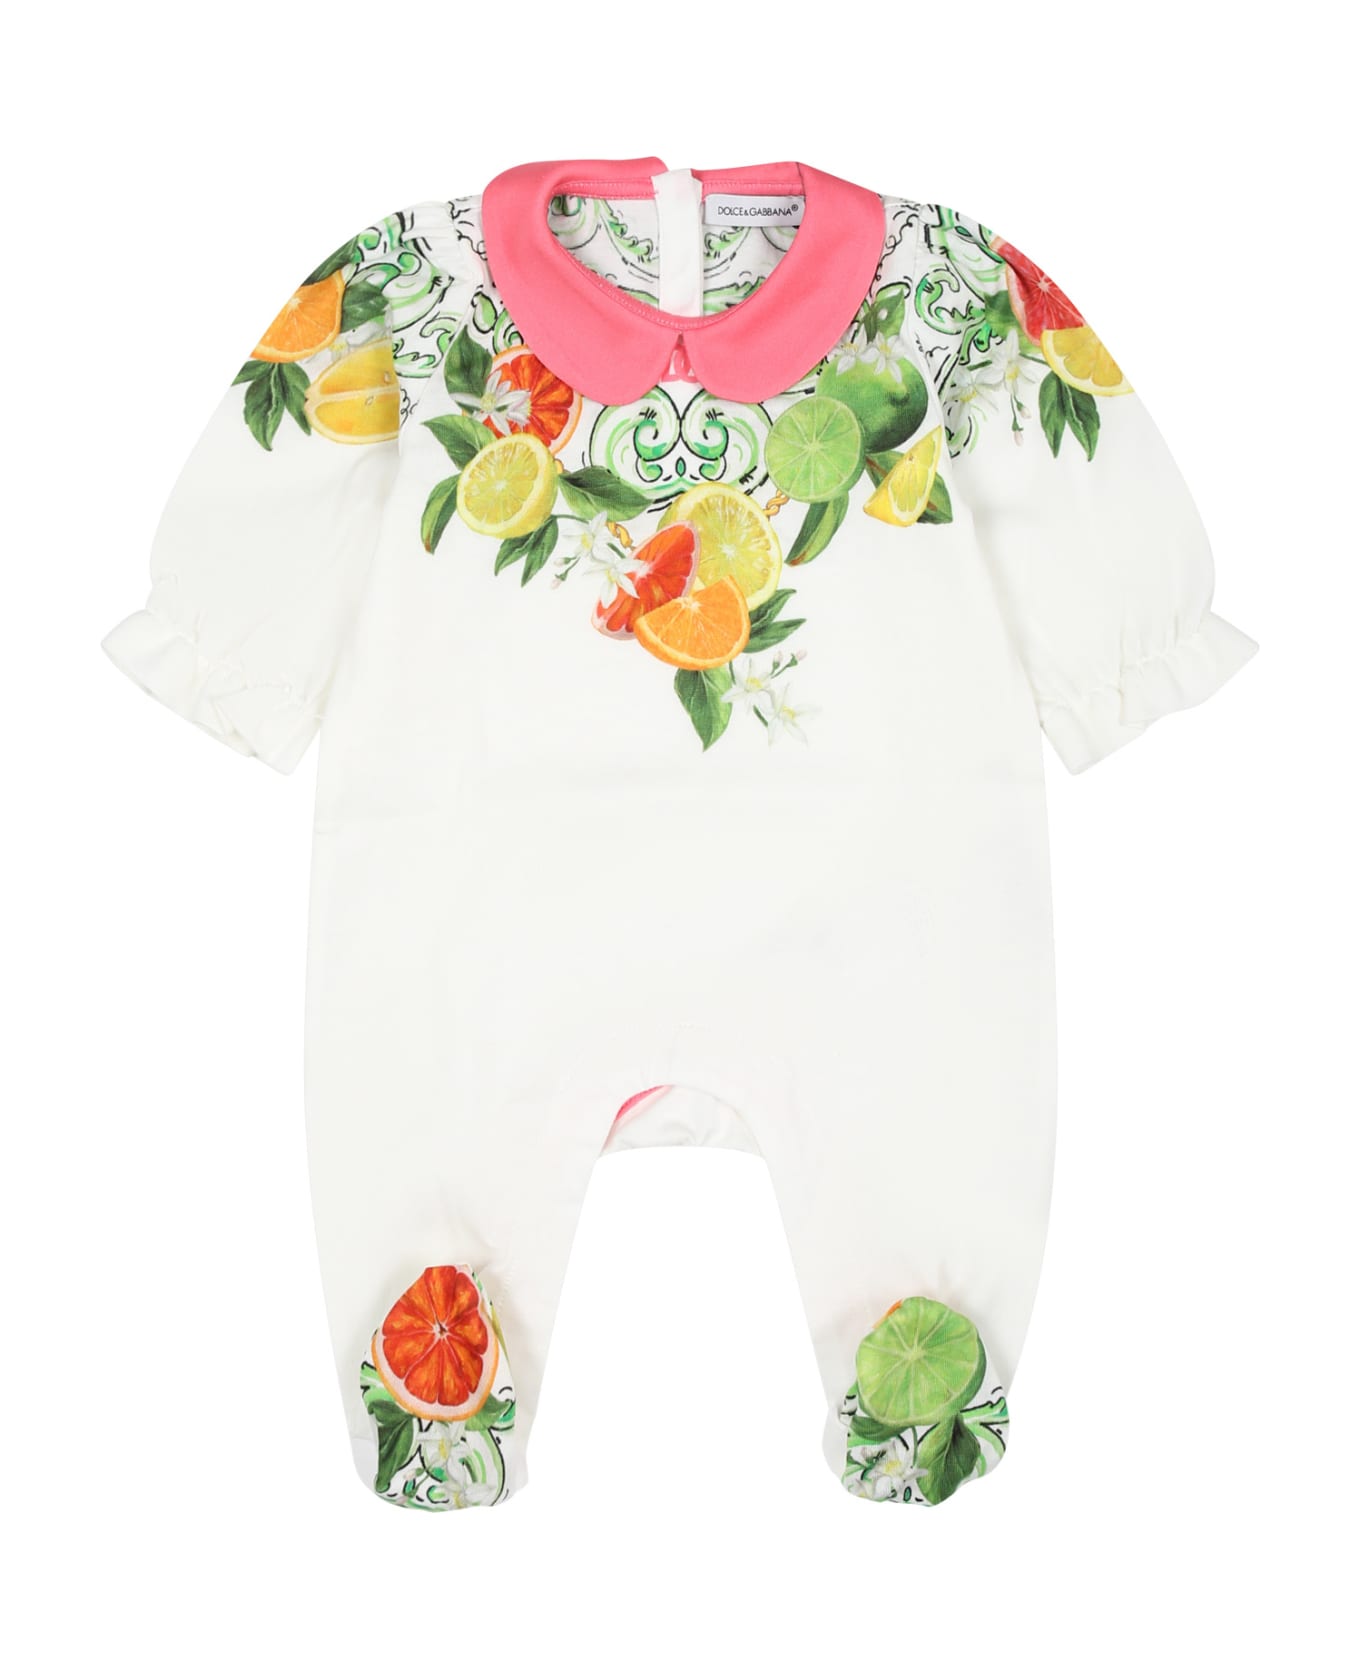 Dolce & Gabbana White Set Of Babygrow For Baby Girl - White